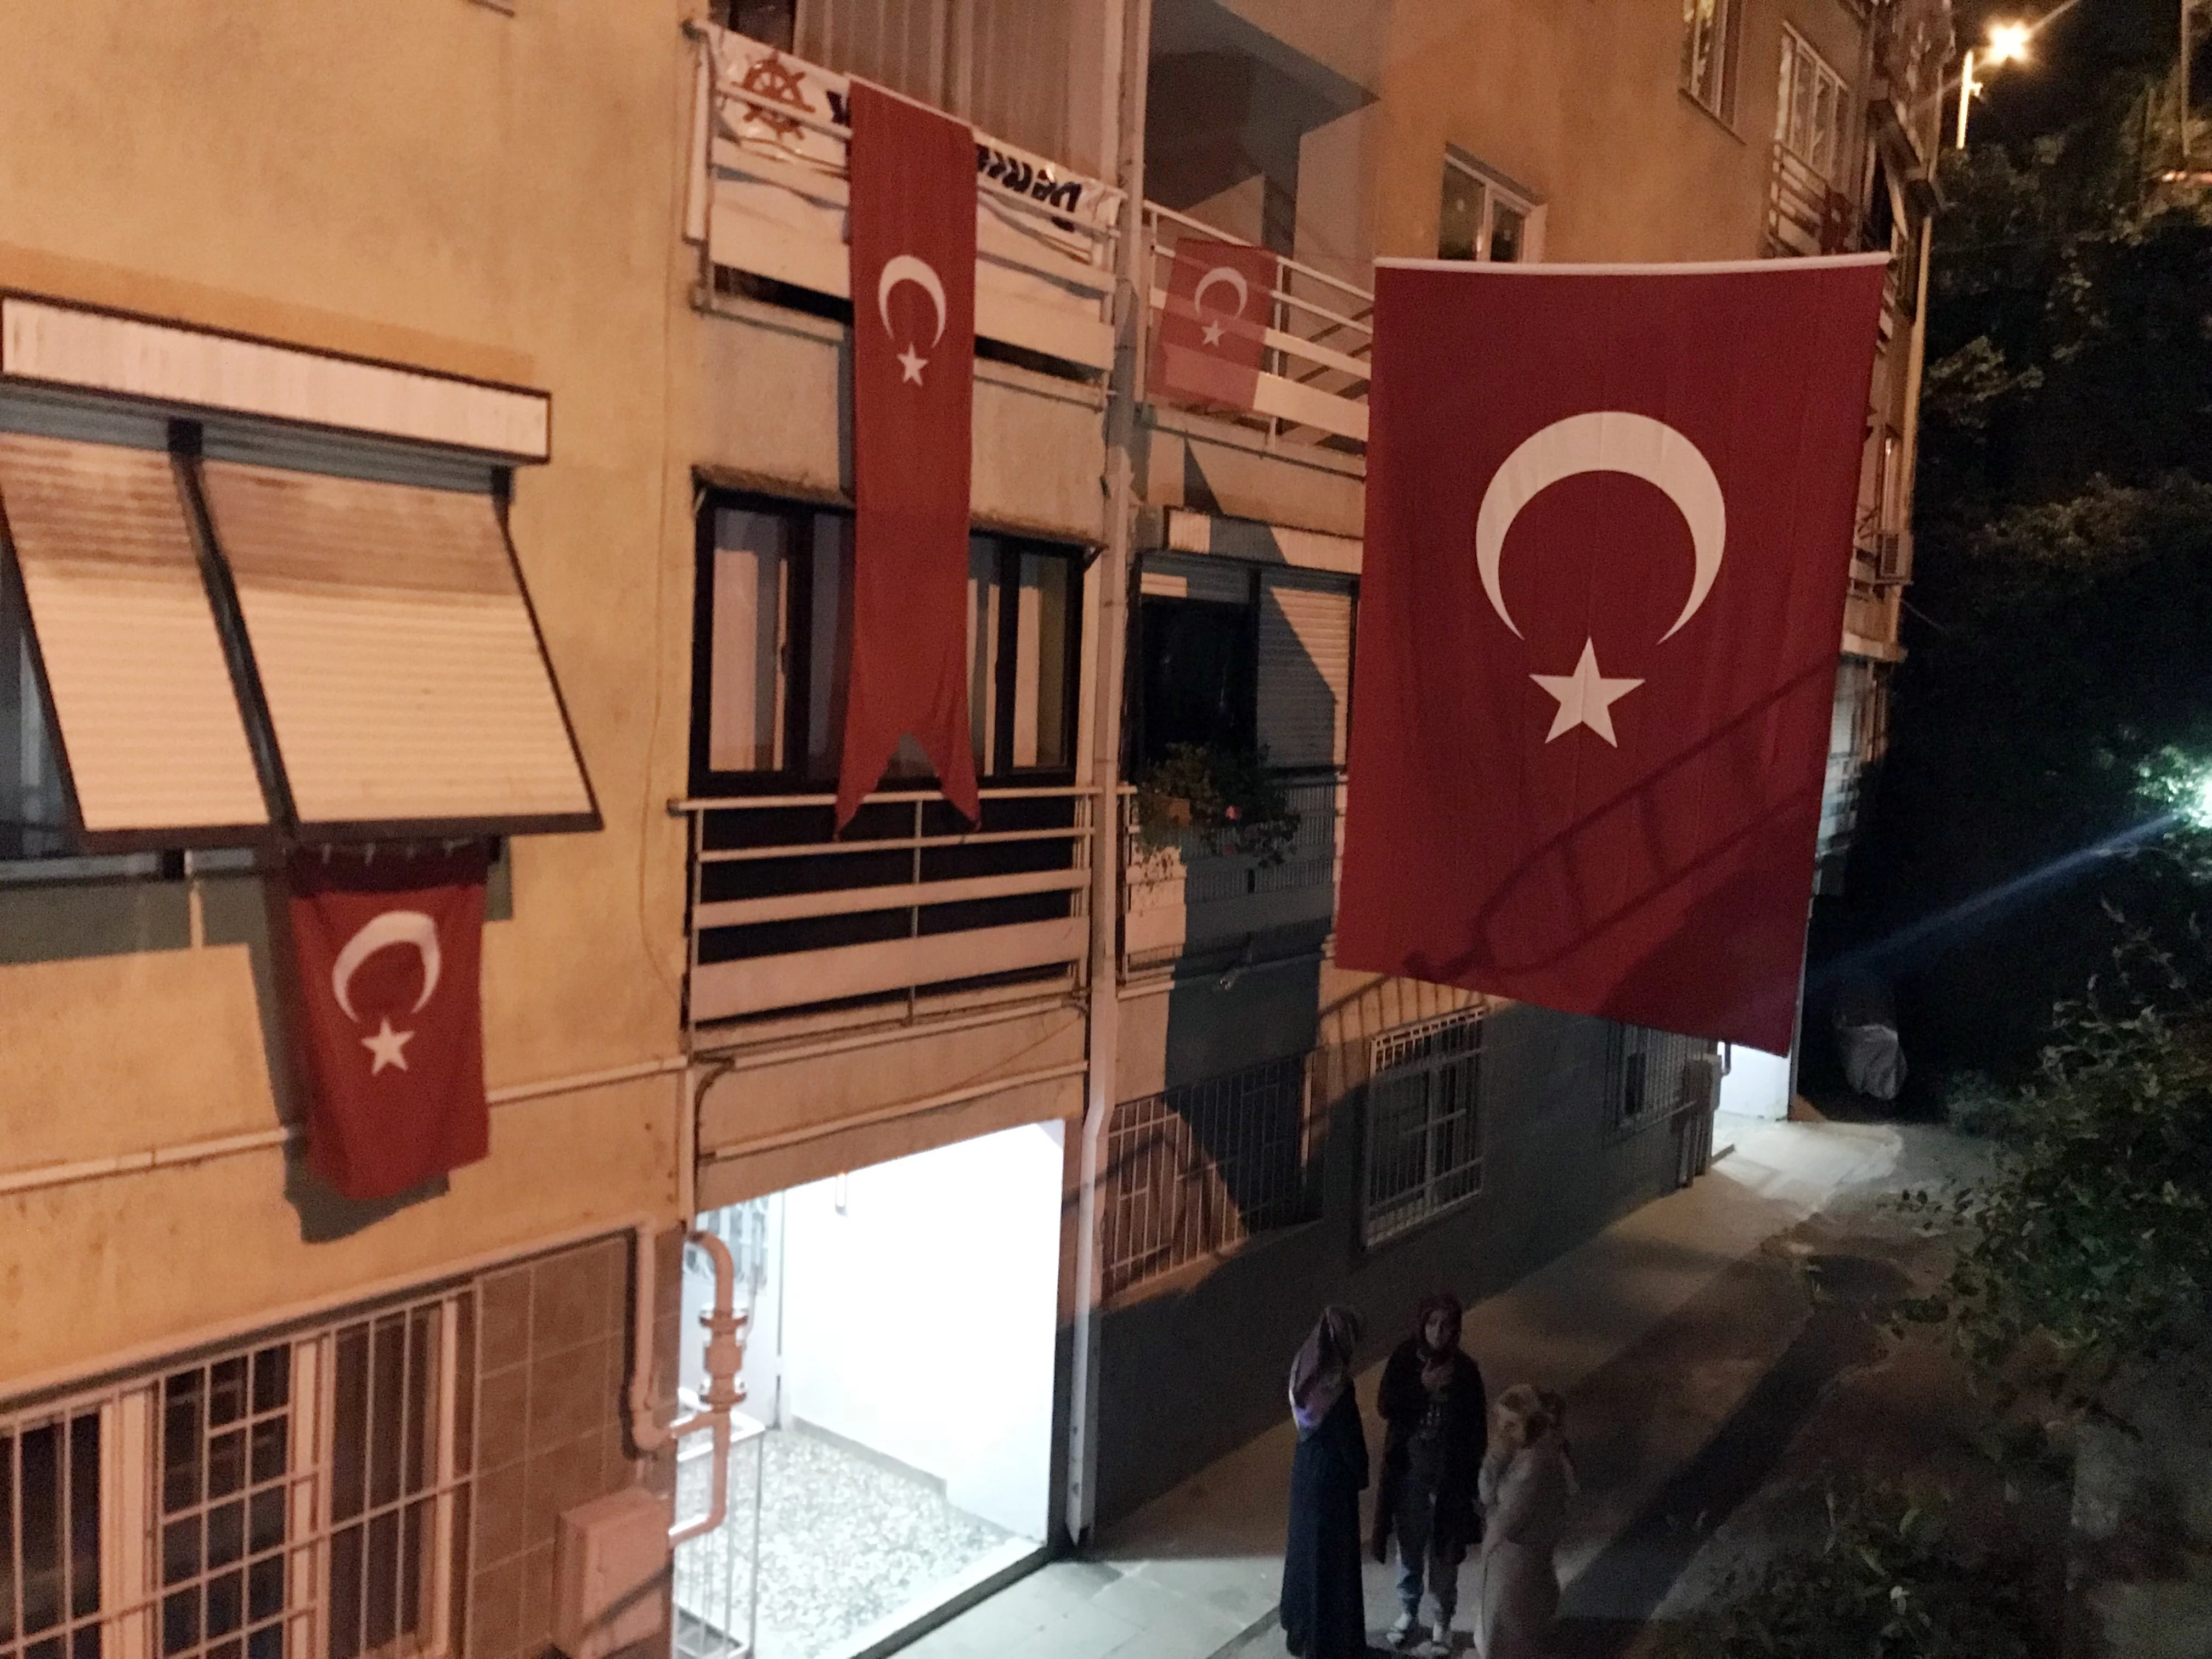 Şehidin evi Türk bayraklarıyla donatıldı